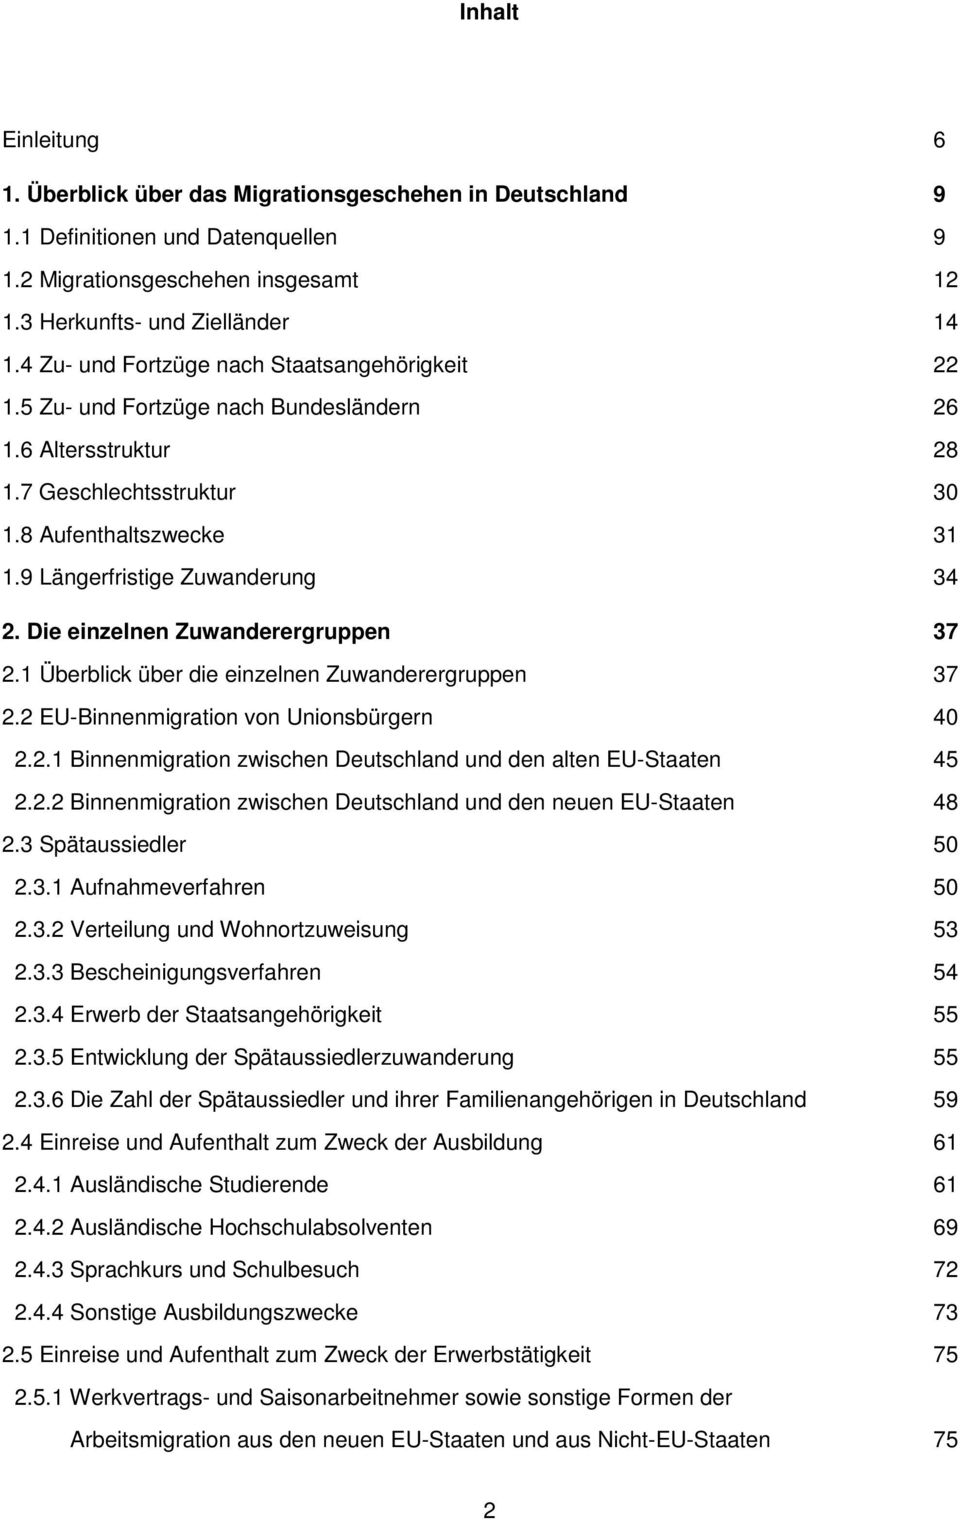 Die einzelnen Zuwanderergruppen 37 2.1 Überblick über die einzelnen Zuwanderergruppen 37 2.2 EU-Binnenmigration von Unionsbürgern 40 2.2.1 Binnenmigration zwischen Deutschland und den alten EU-Staaten 45 2.